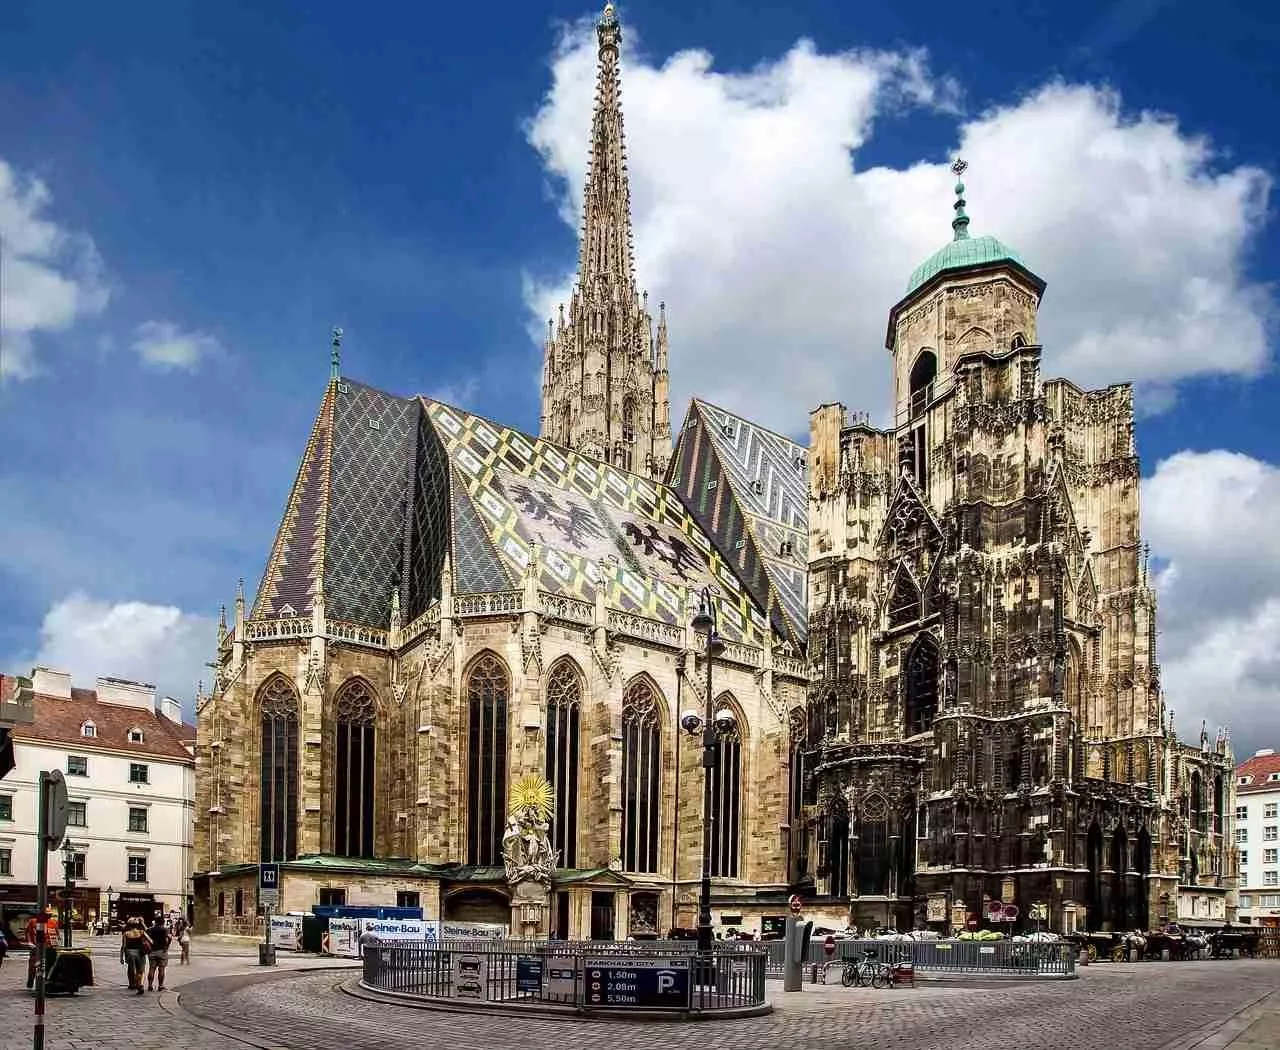 أشهر الاماكن السياحية في فيينا: أضيفيها إلى قائمة وجهاتكِ المقبلة